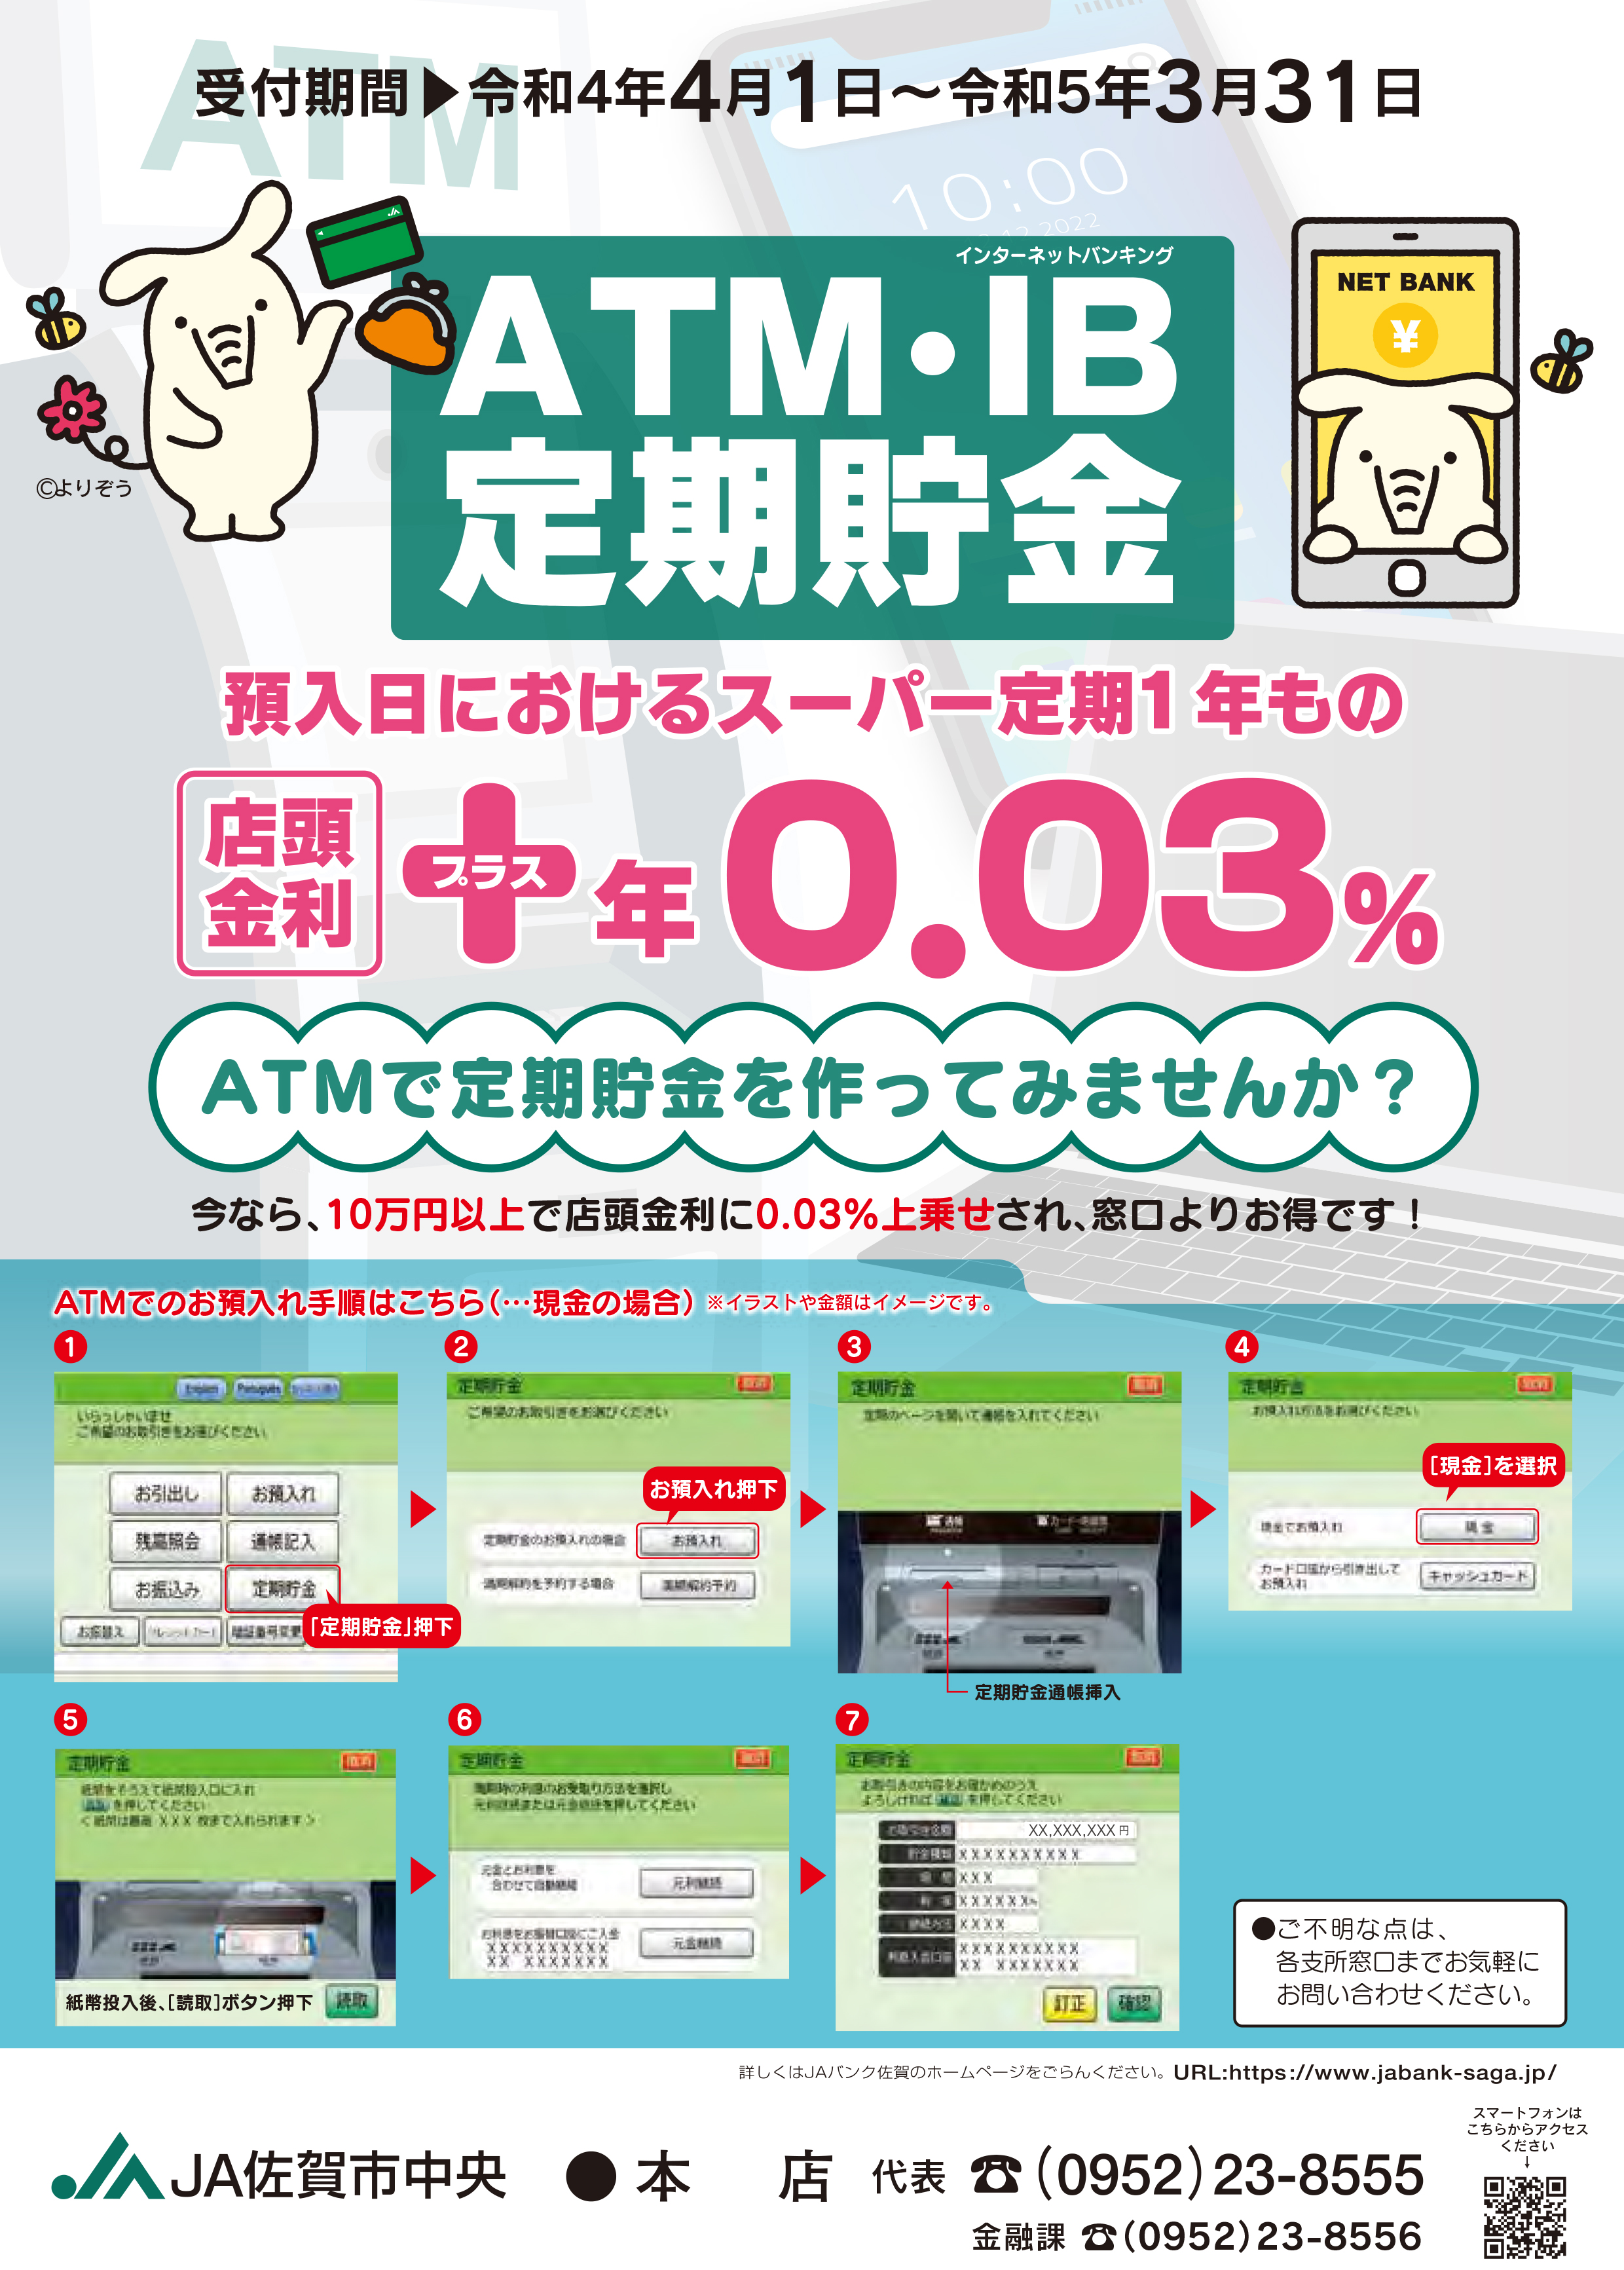 ATM・IB定期預金